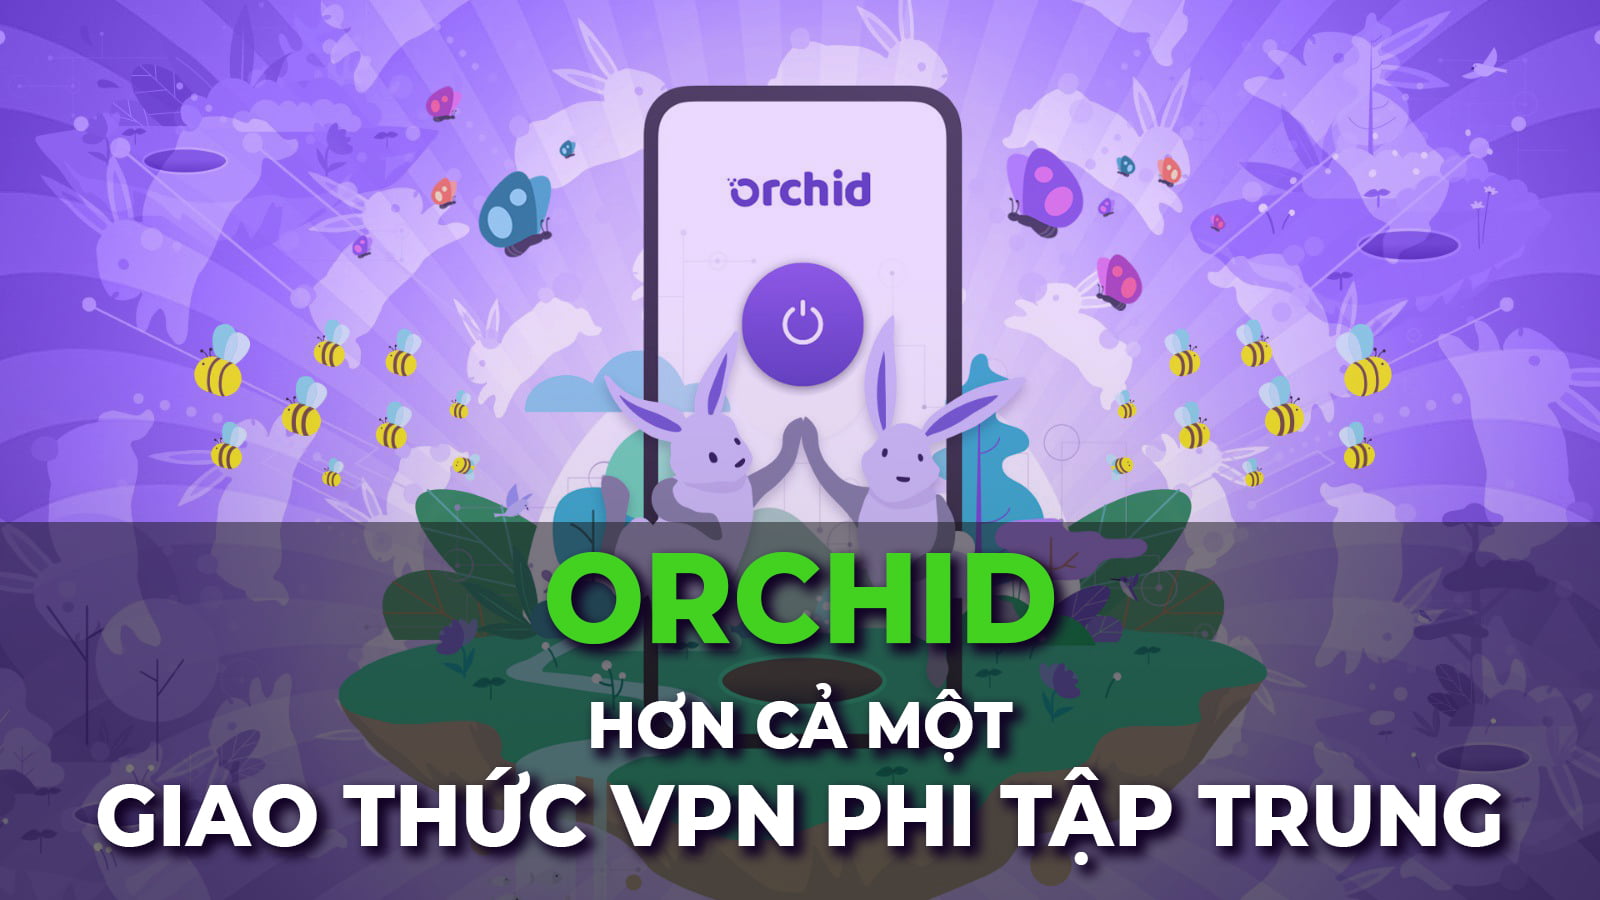 Orchid - Hơn cả một giao thức VPN phi tập trung